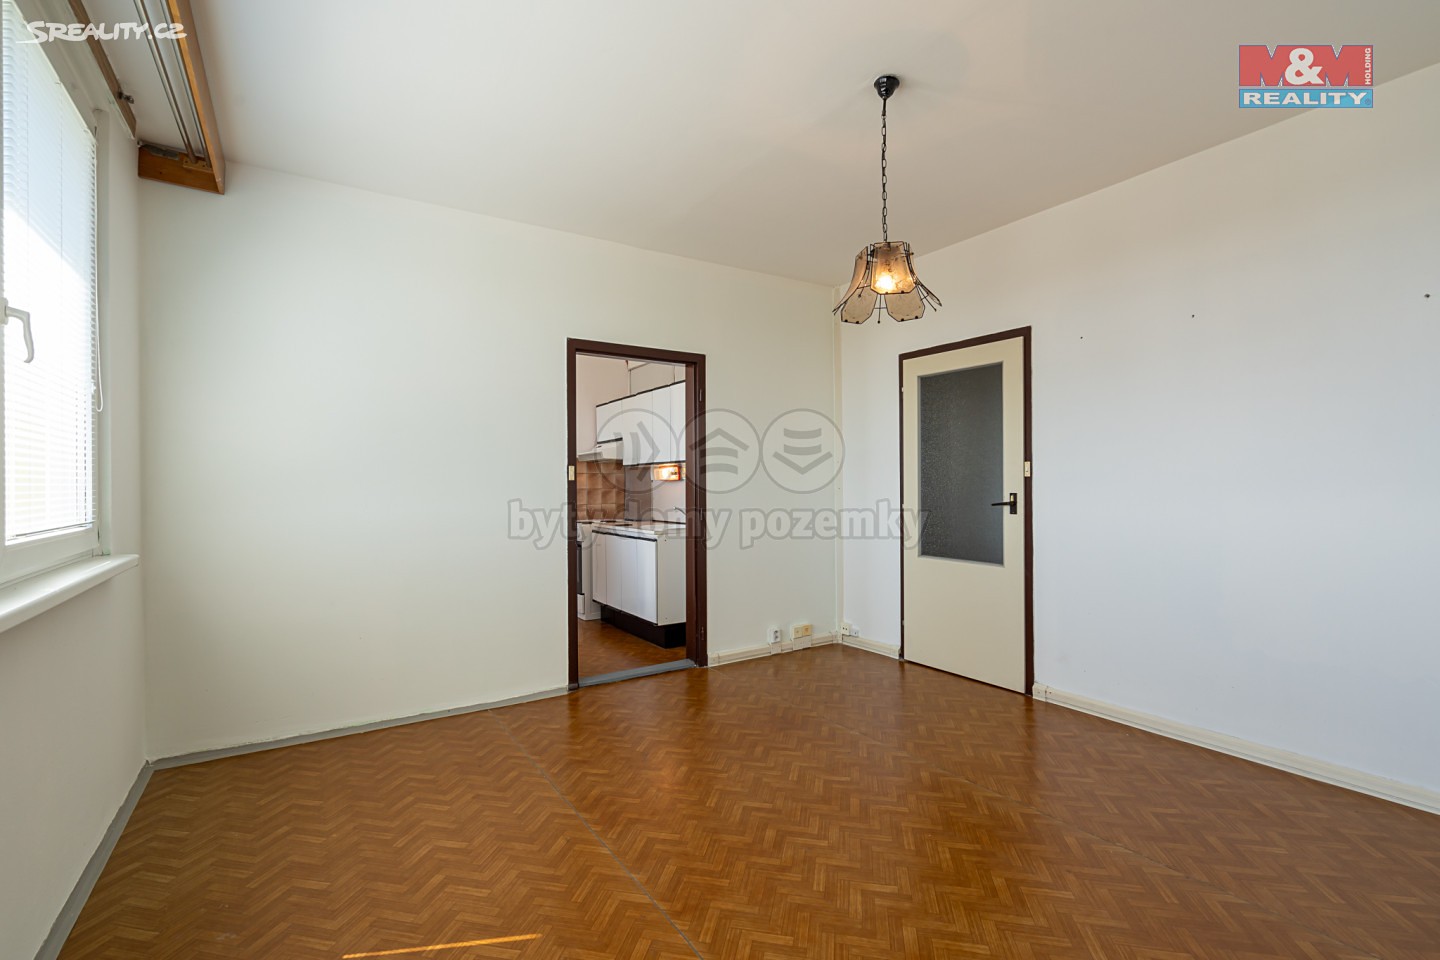 Prodej bytu 2+1 44 m², Hranická, Přerov - Přerov II-Předmostí